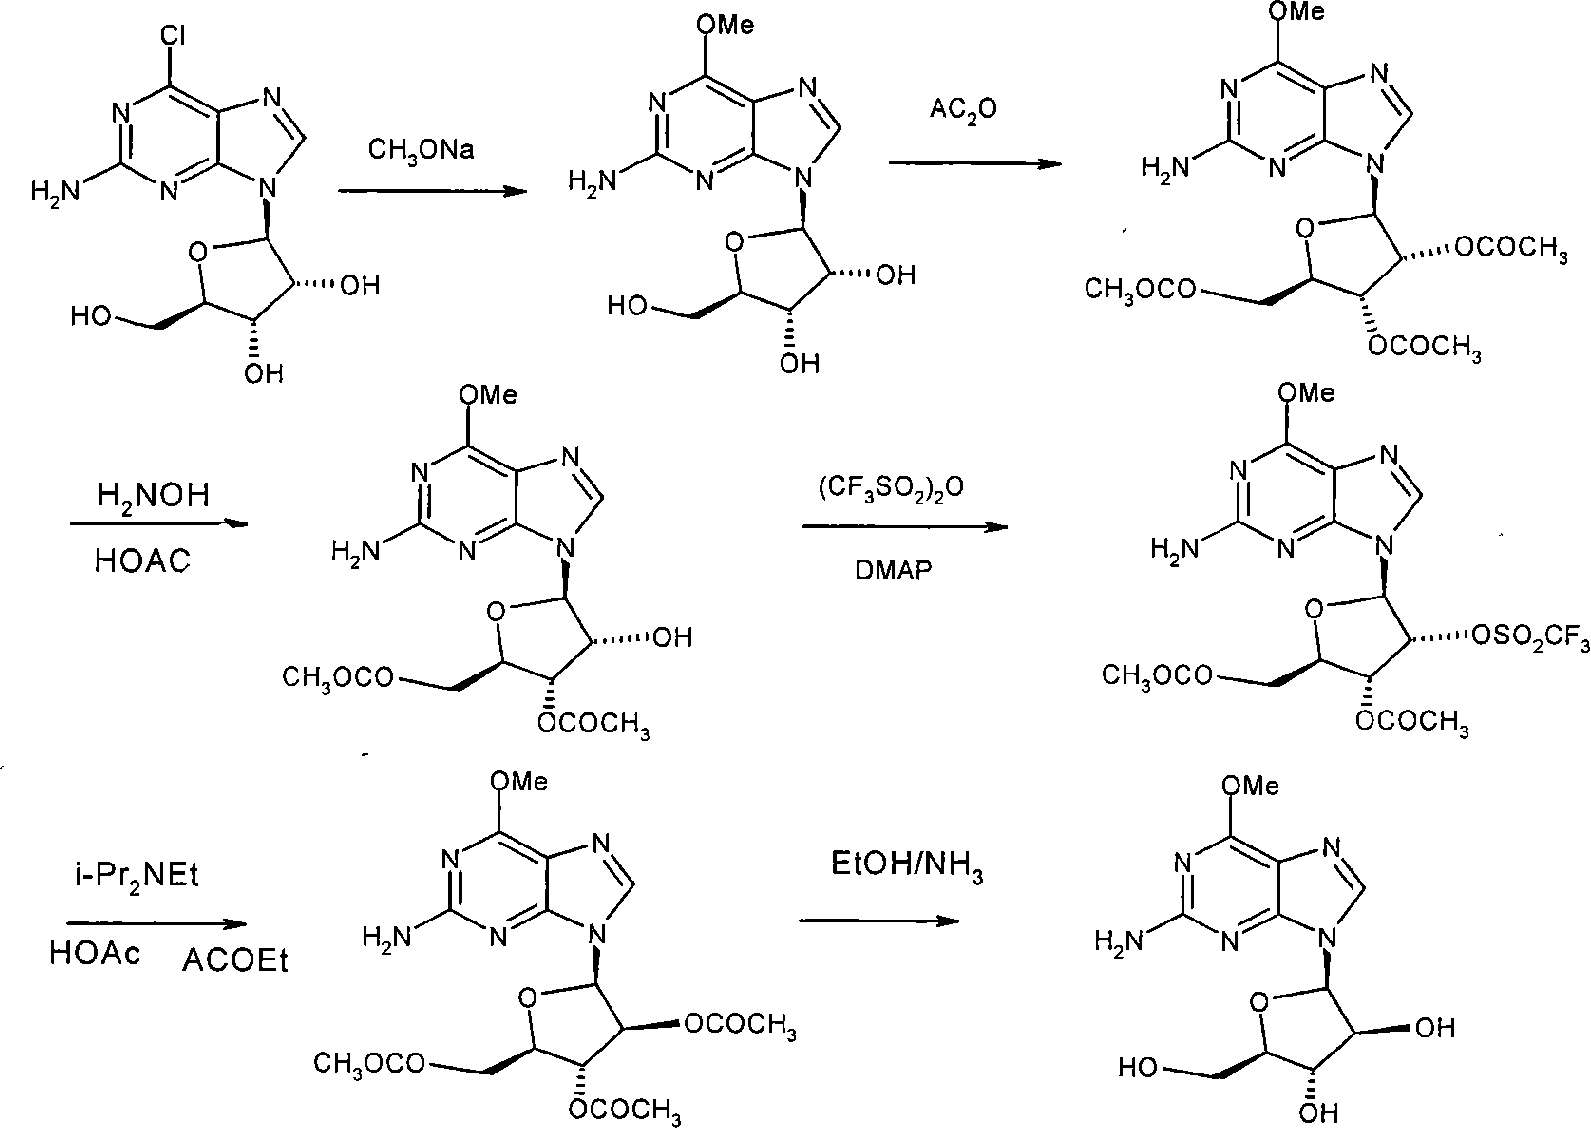 Method for synthesizing nelarabine